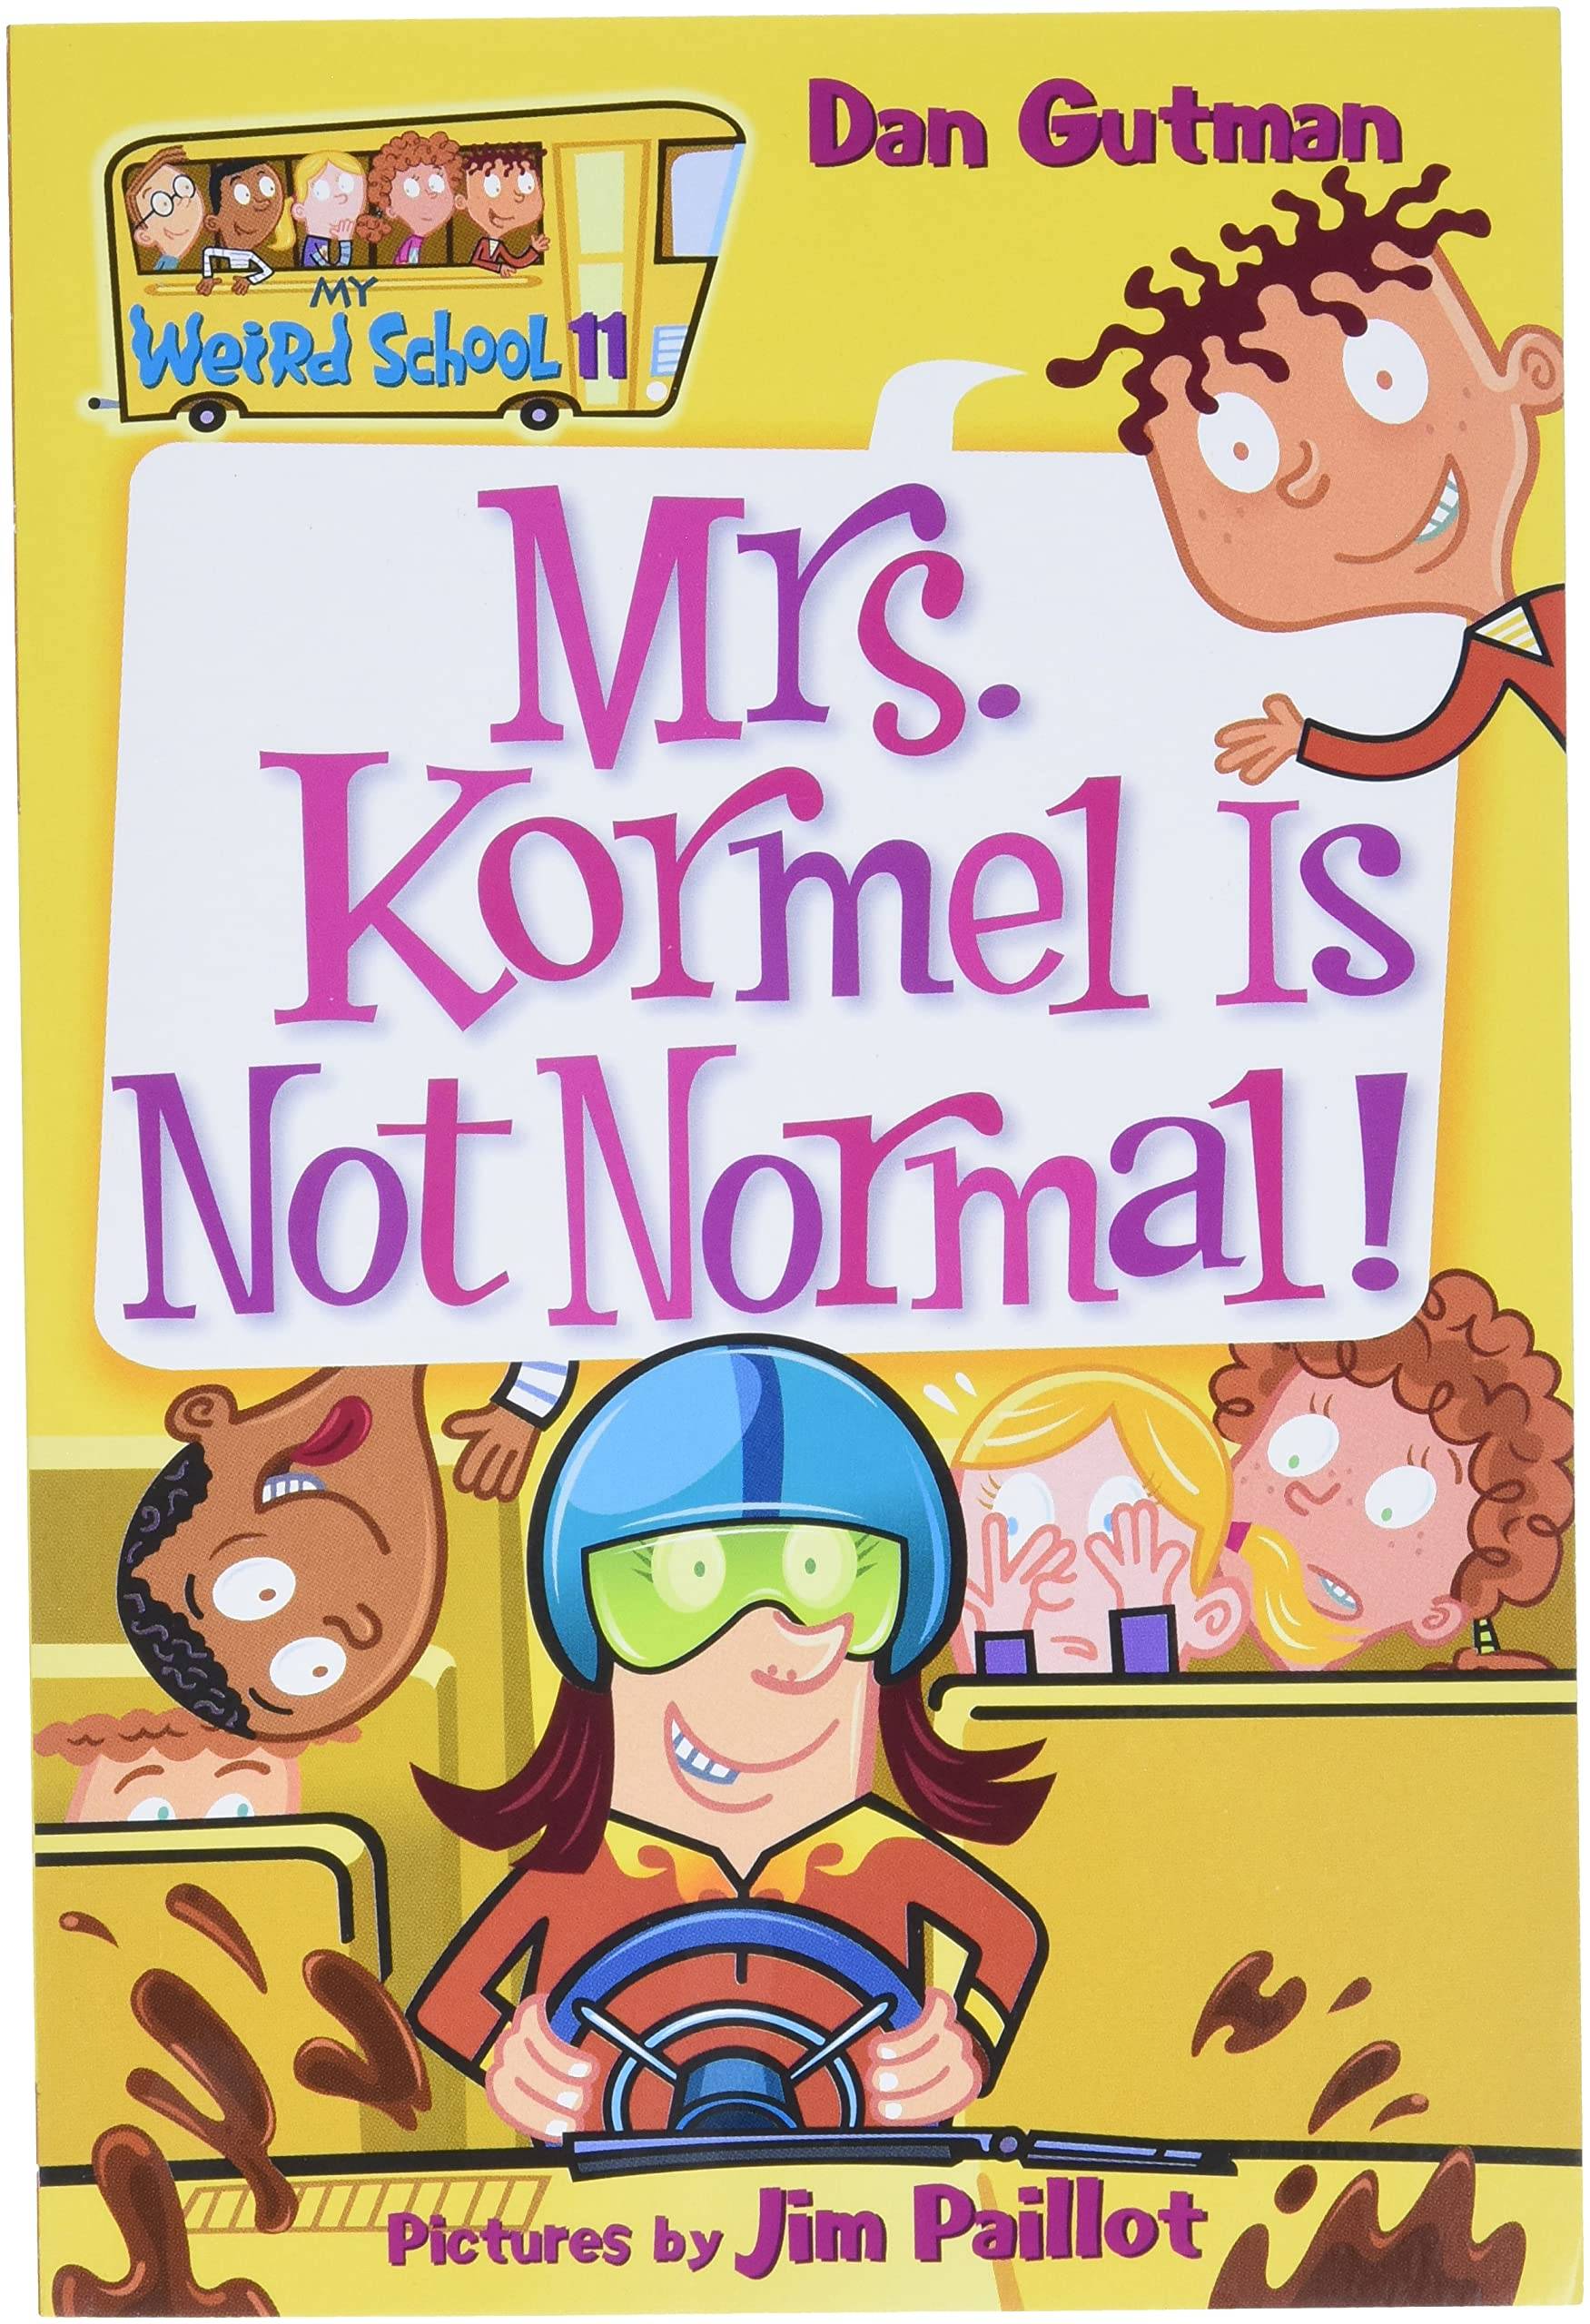 IMG : My Weird School-11 Mrs. Kormel is Not Normal!